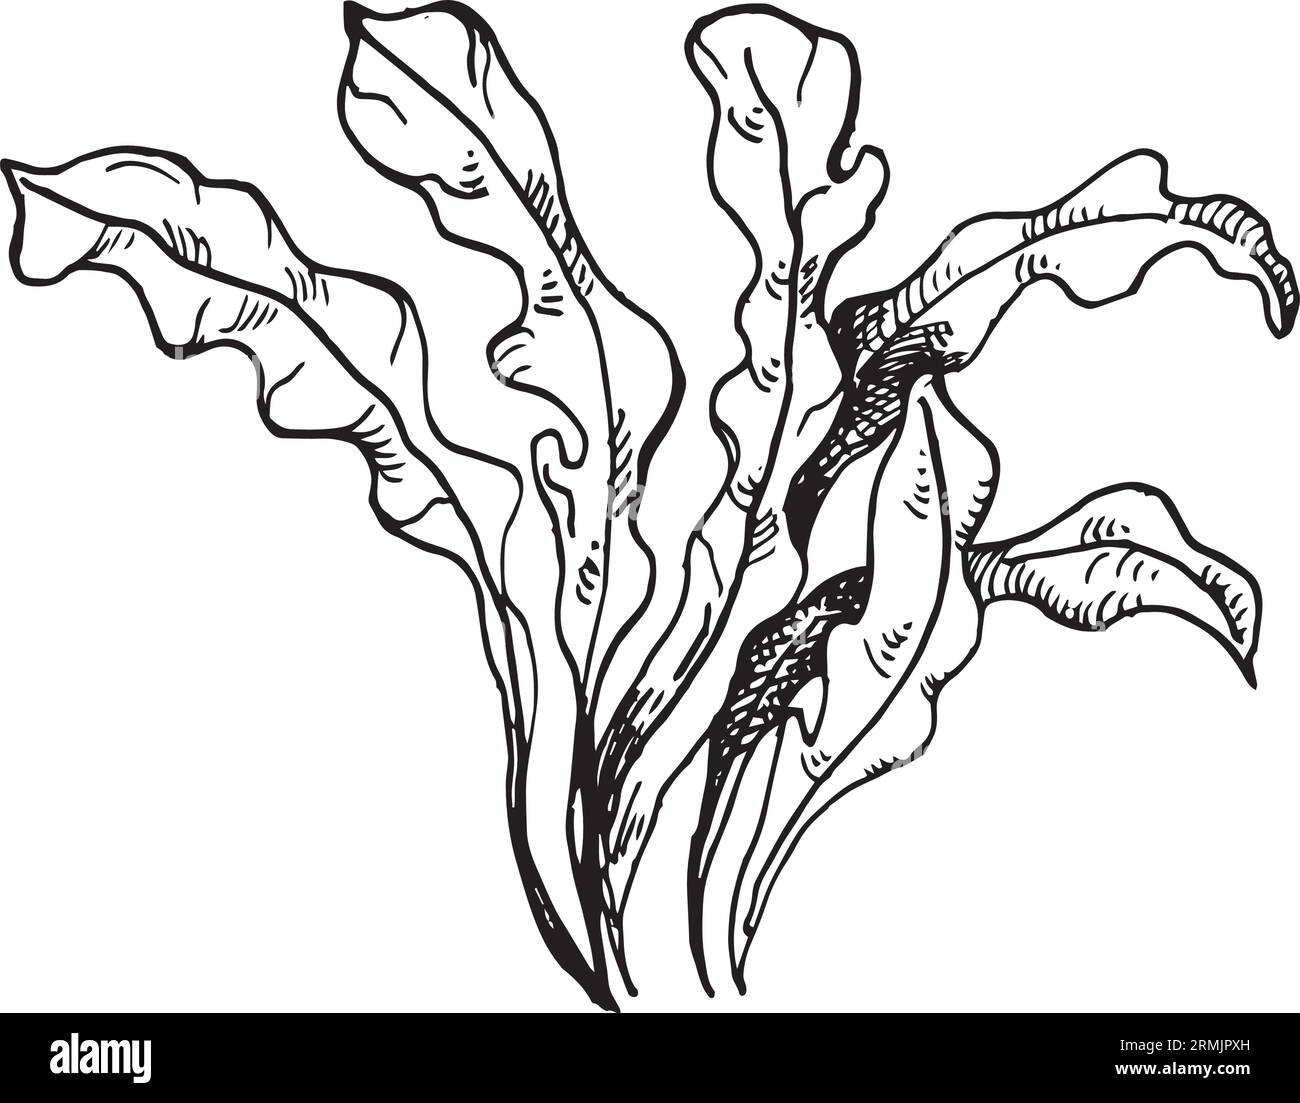 Vektor rosa Meerespflanzen Tinte Hand gezeichnete Illustration isoliert auf weißem Hintergrund. Rote porphyra-Blätter, Algen schwarz-weiße Linie. Konstruktionselement für Stock Vektor